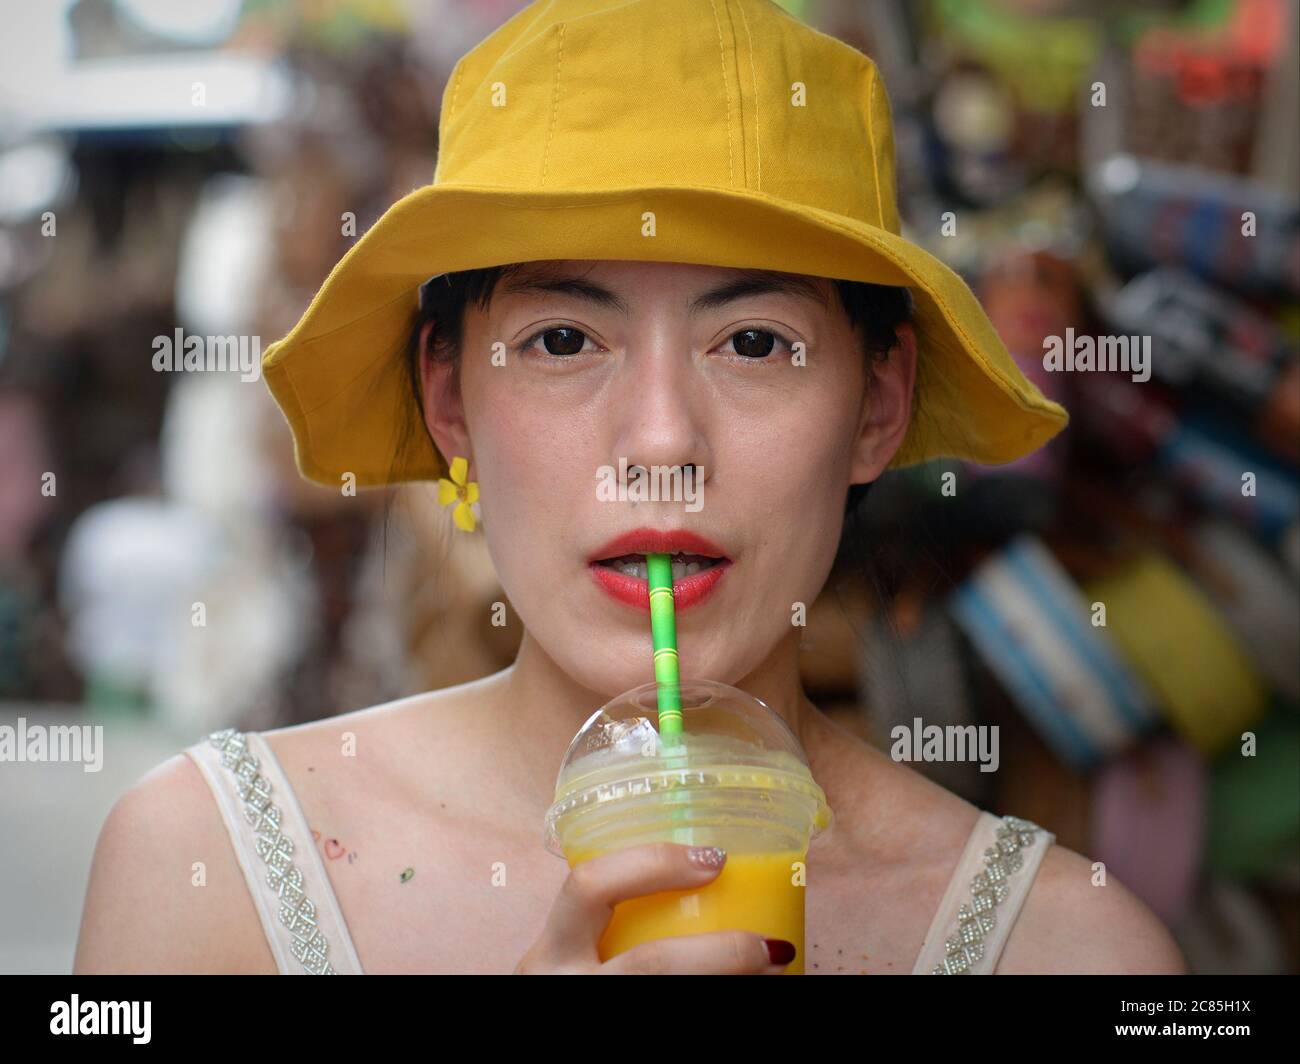 Jeune femme asiatique avec chapeau de disquettes jaune porte des lentilles de contact foncées et boit du jus de fruits jaunes avec une paille d'une tasse en plastique. Banque D'Images